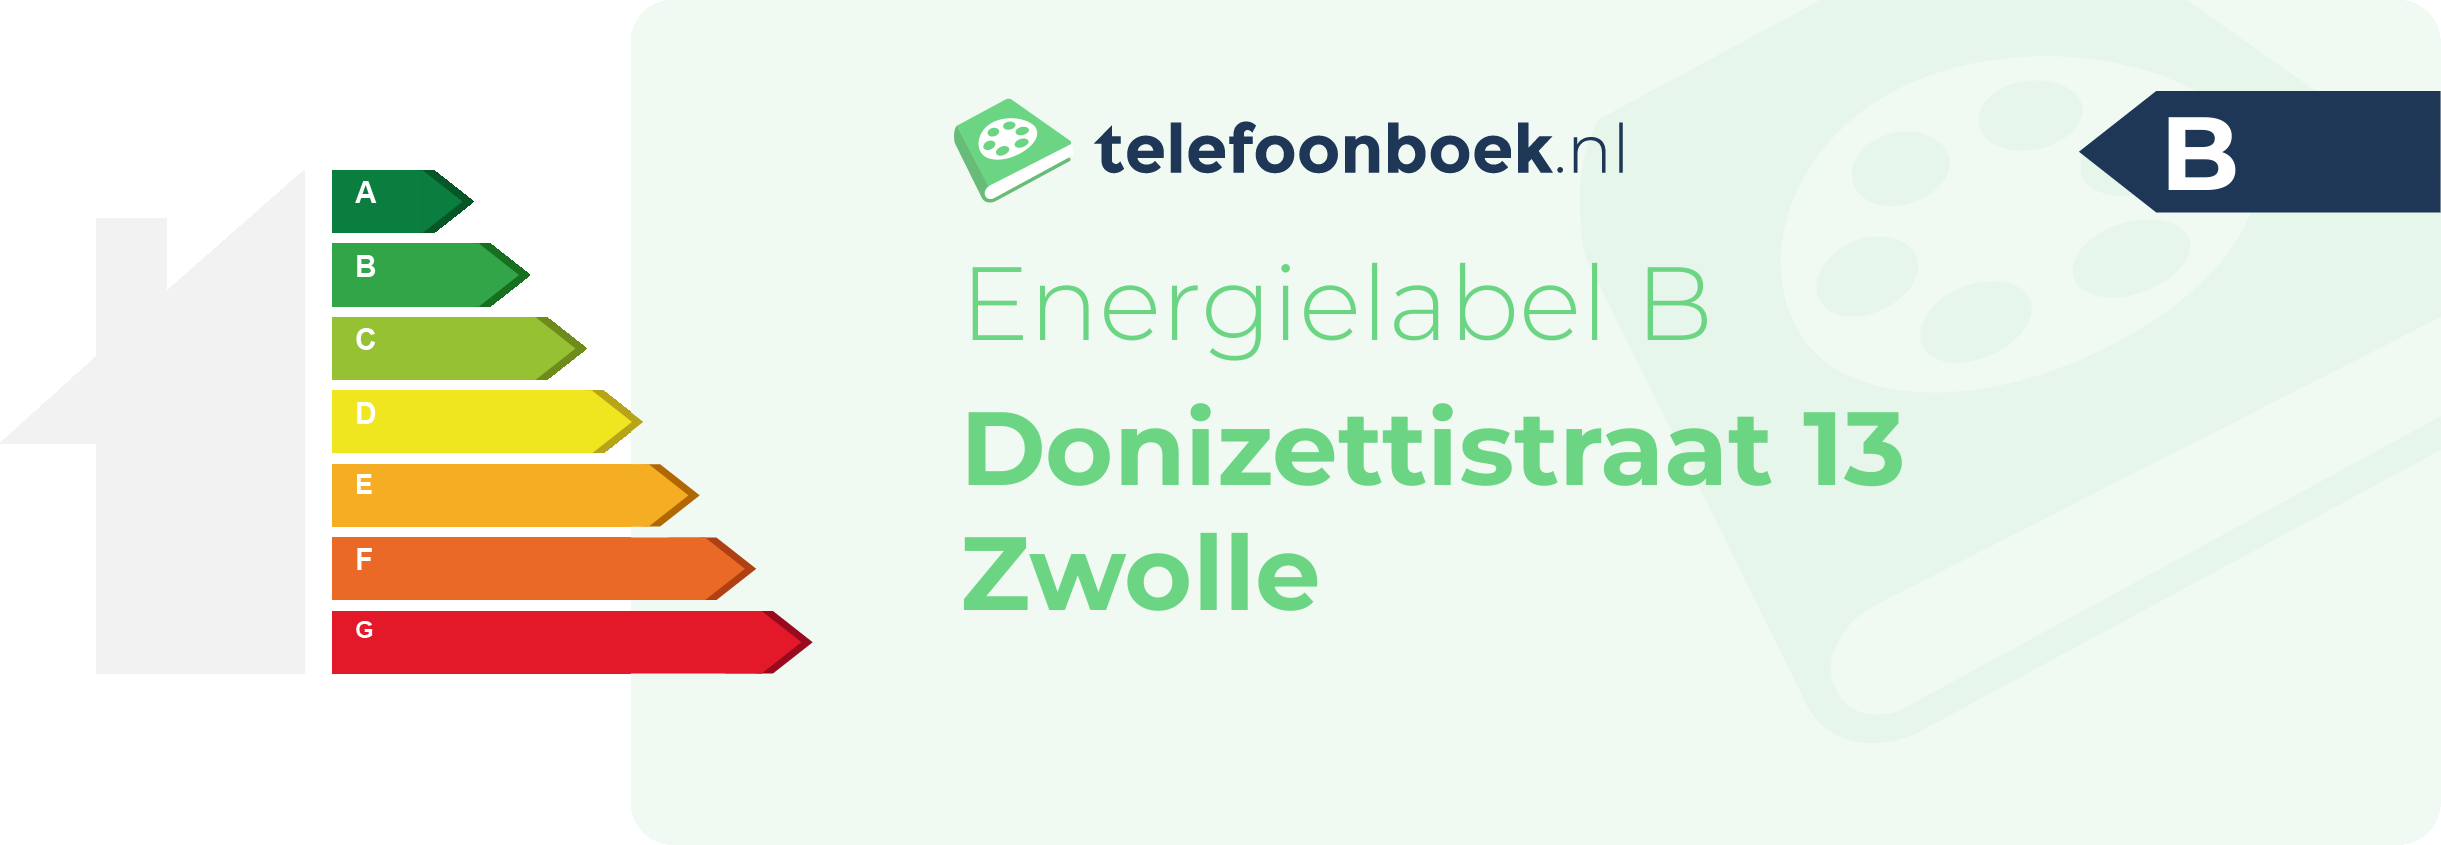 Energielabel Donizettistraat 13 Zwolle